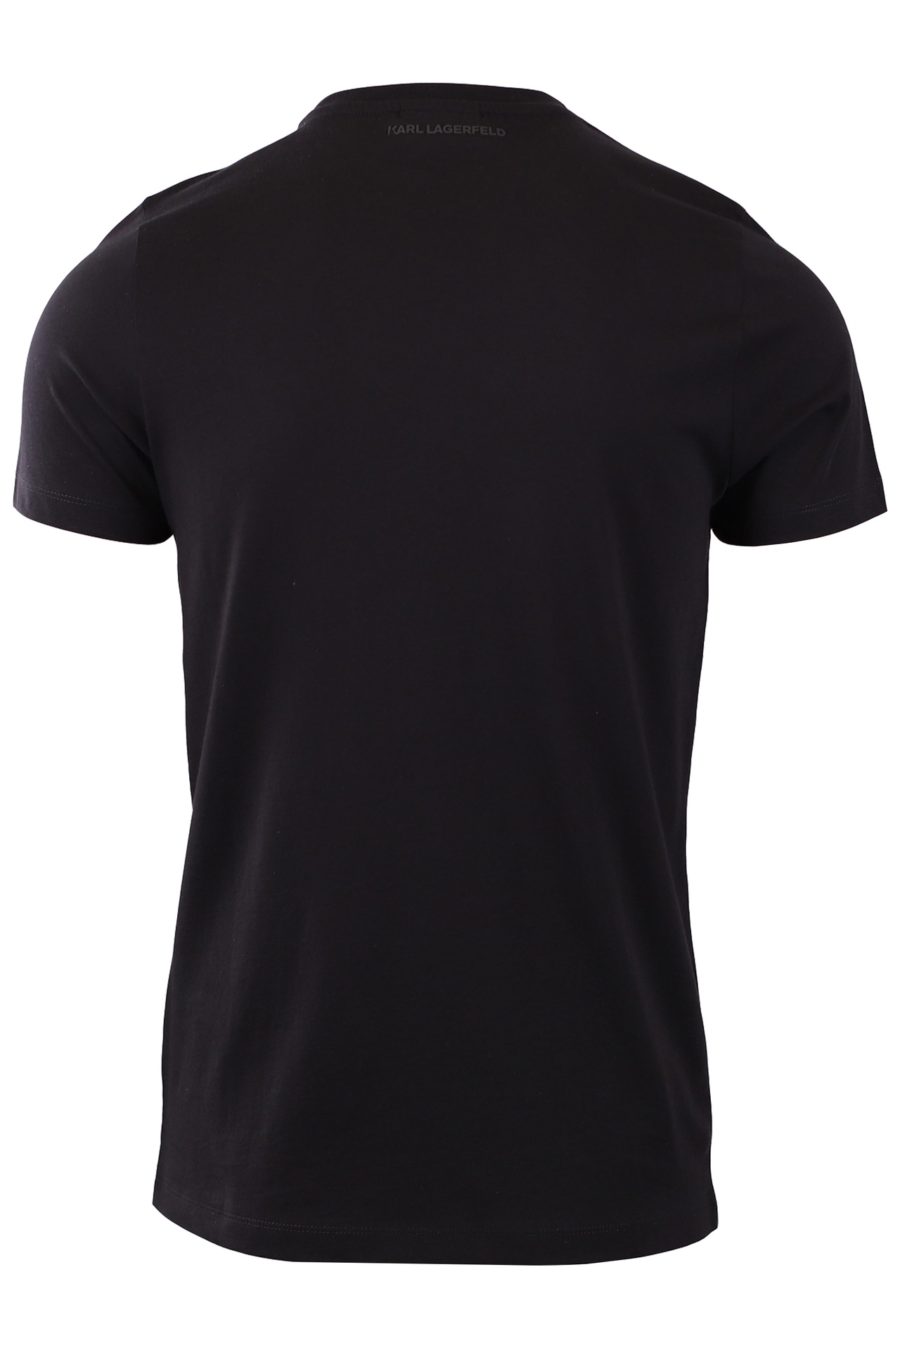 Camiseta negra con triple "Karl" - 23472e1c457f6353061f20f467efdc4b577cf7cd